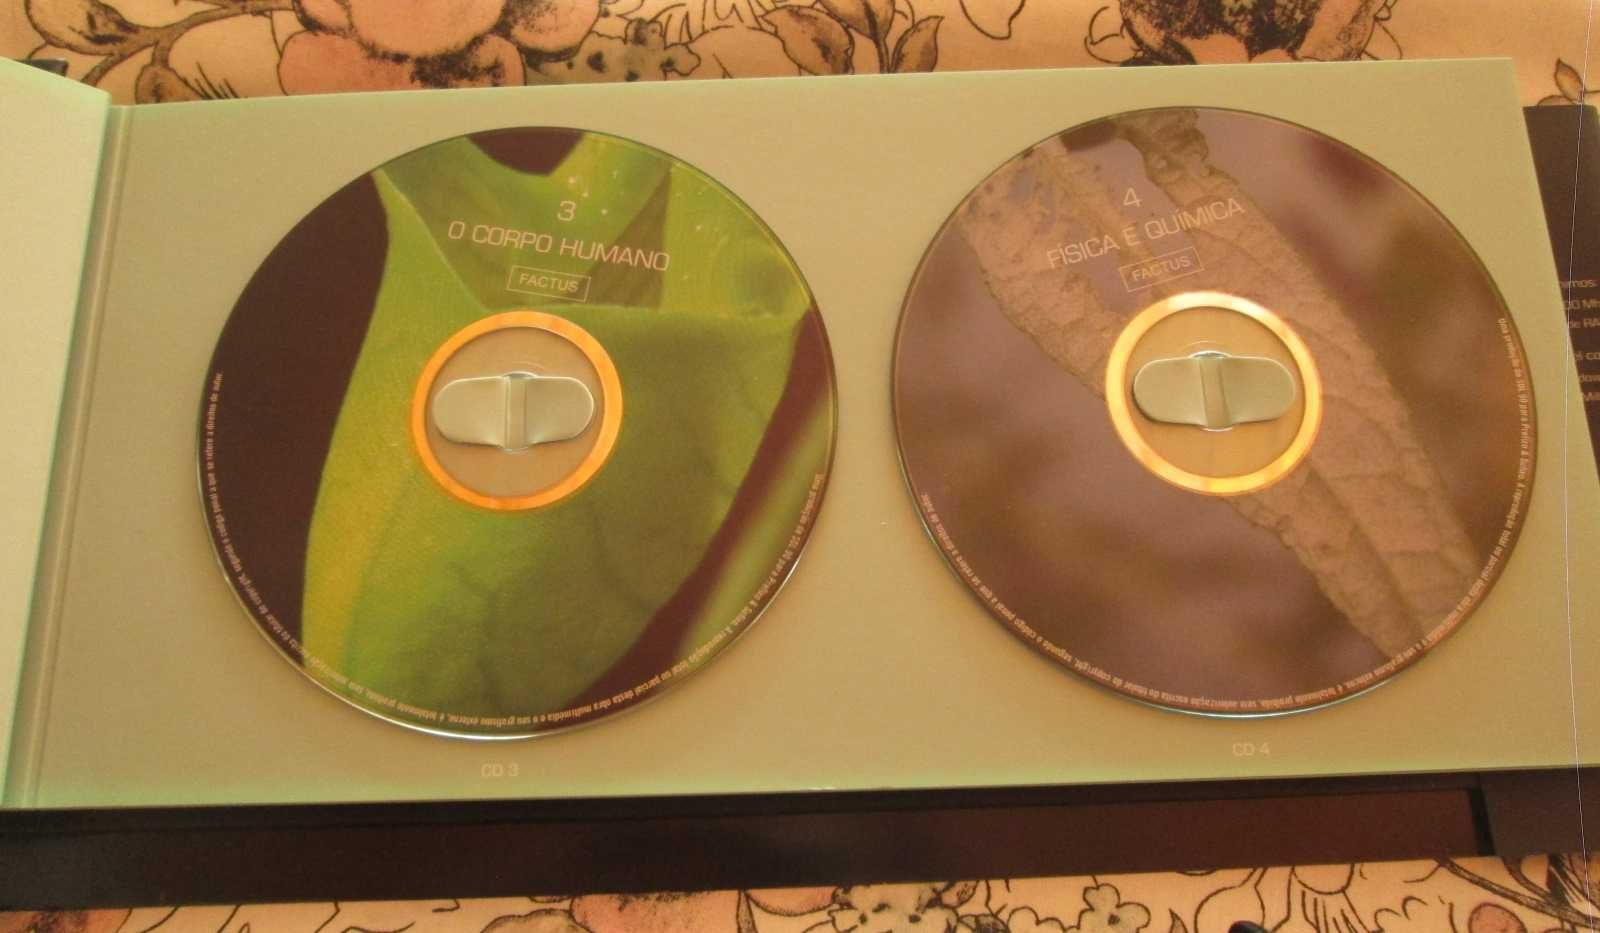 Factus - Multimédia (12 CDs temáticos)